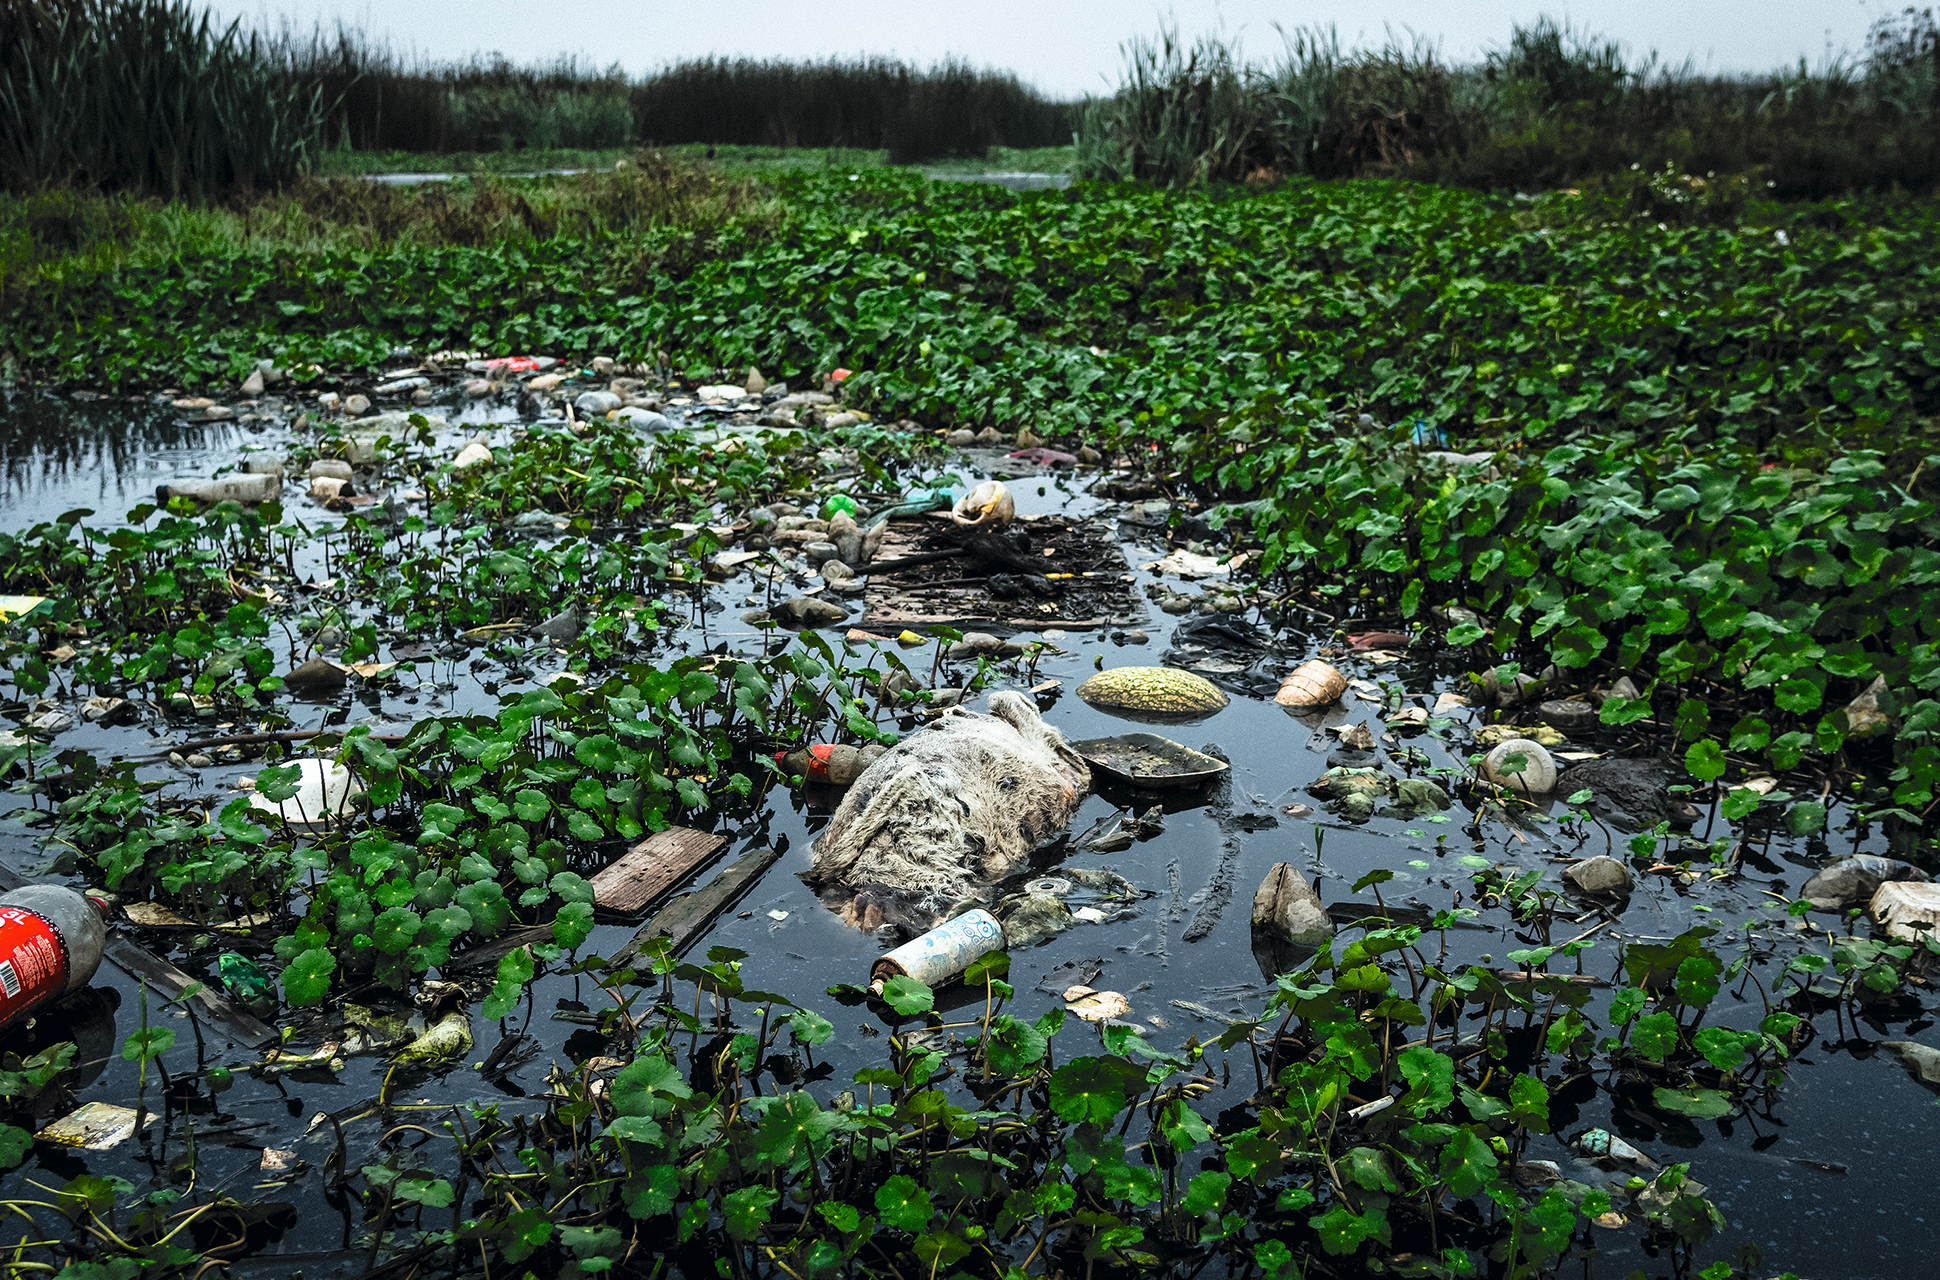 En algunos puntos la contaminación es muy visible. Es fácil encontrar botellas de plástico, llantas y animales muertos.